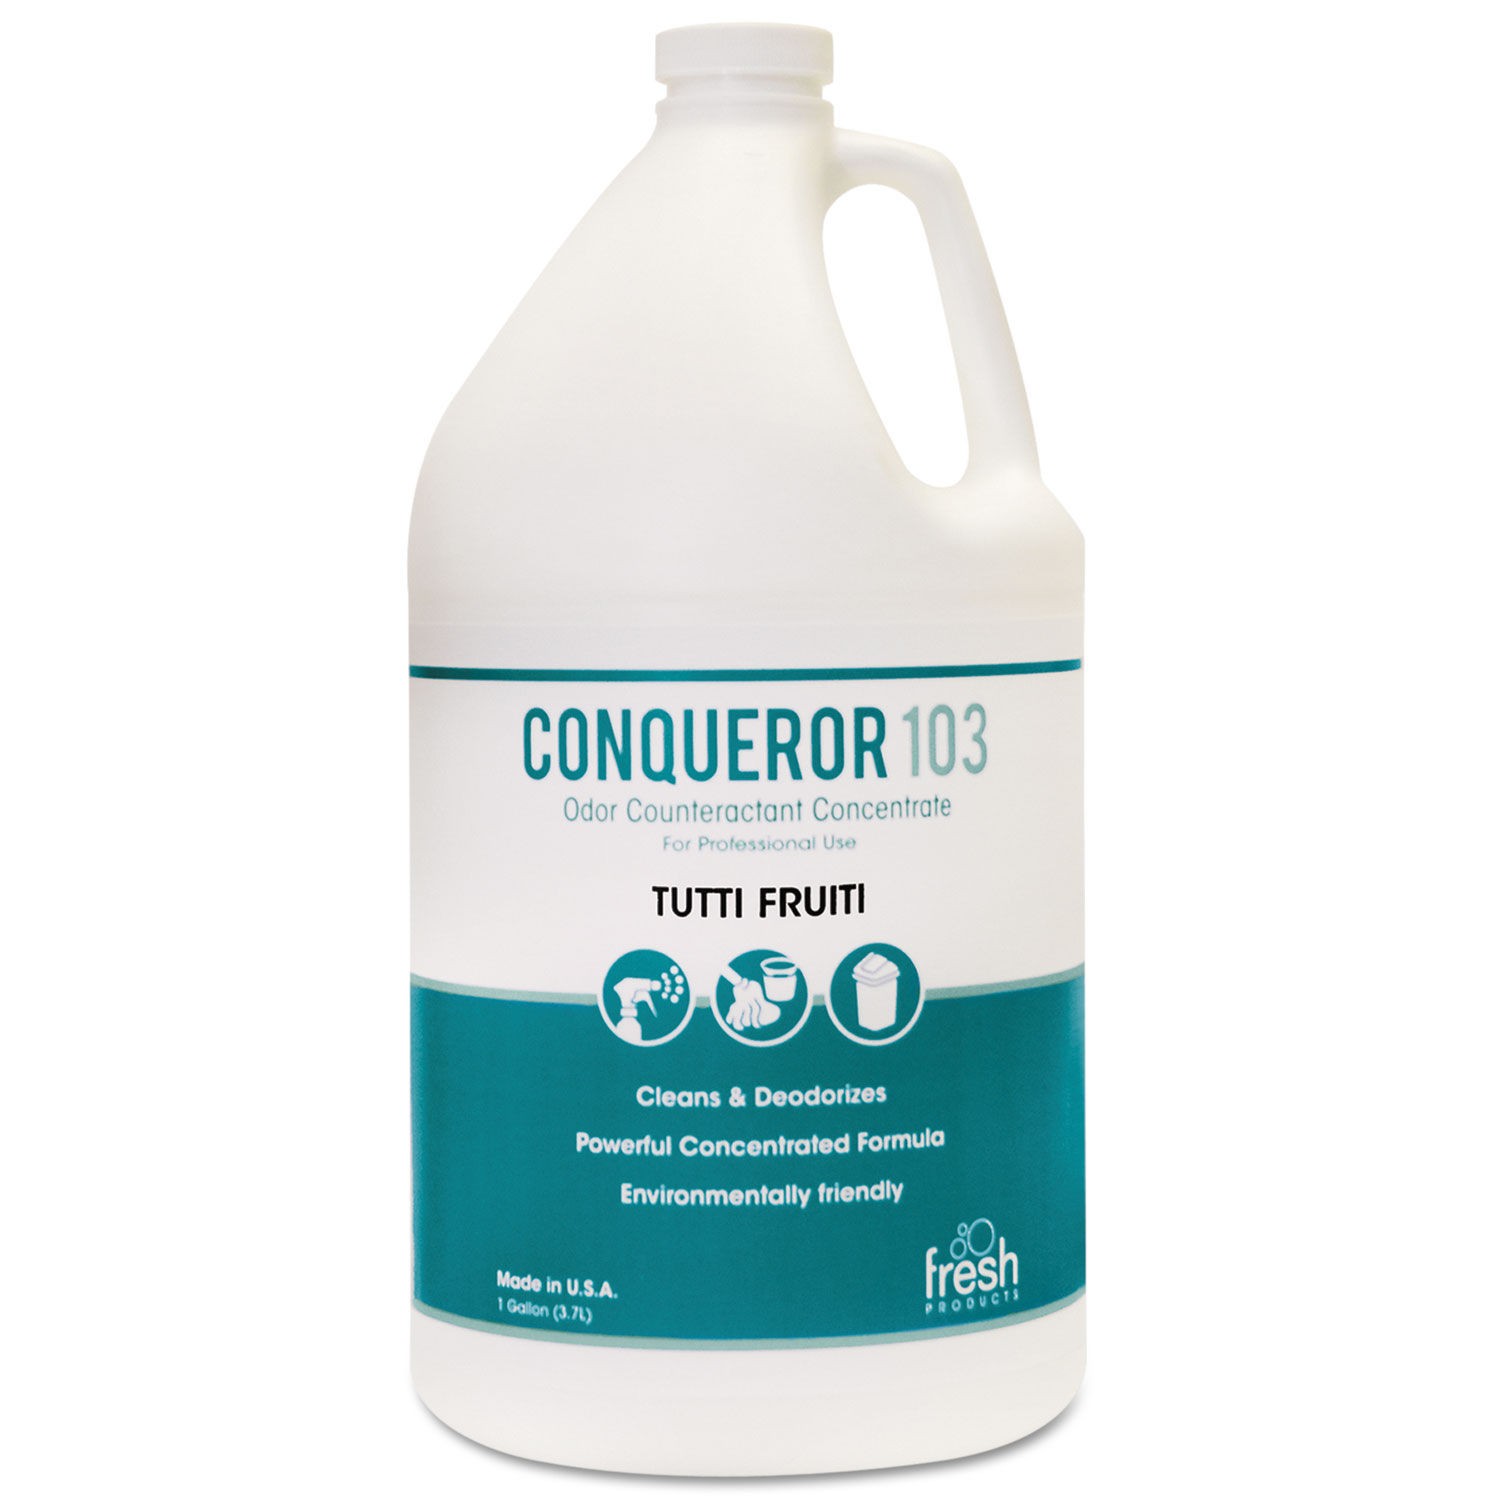 Conqueror 103 Odor Counteractant Concentrate, Tutti-Frutti, 1 Gallon, 4/Carton